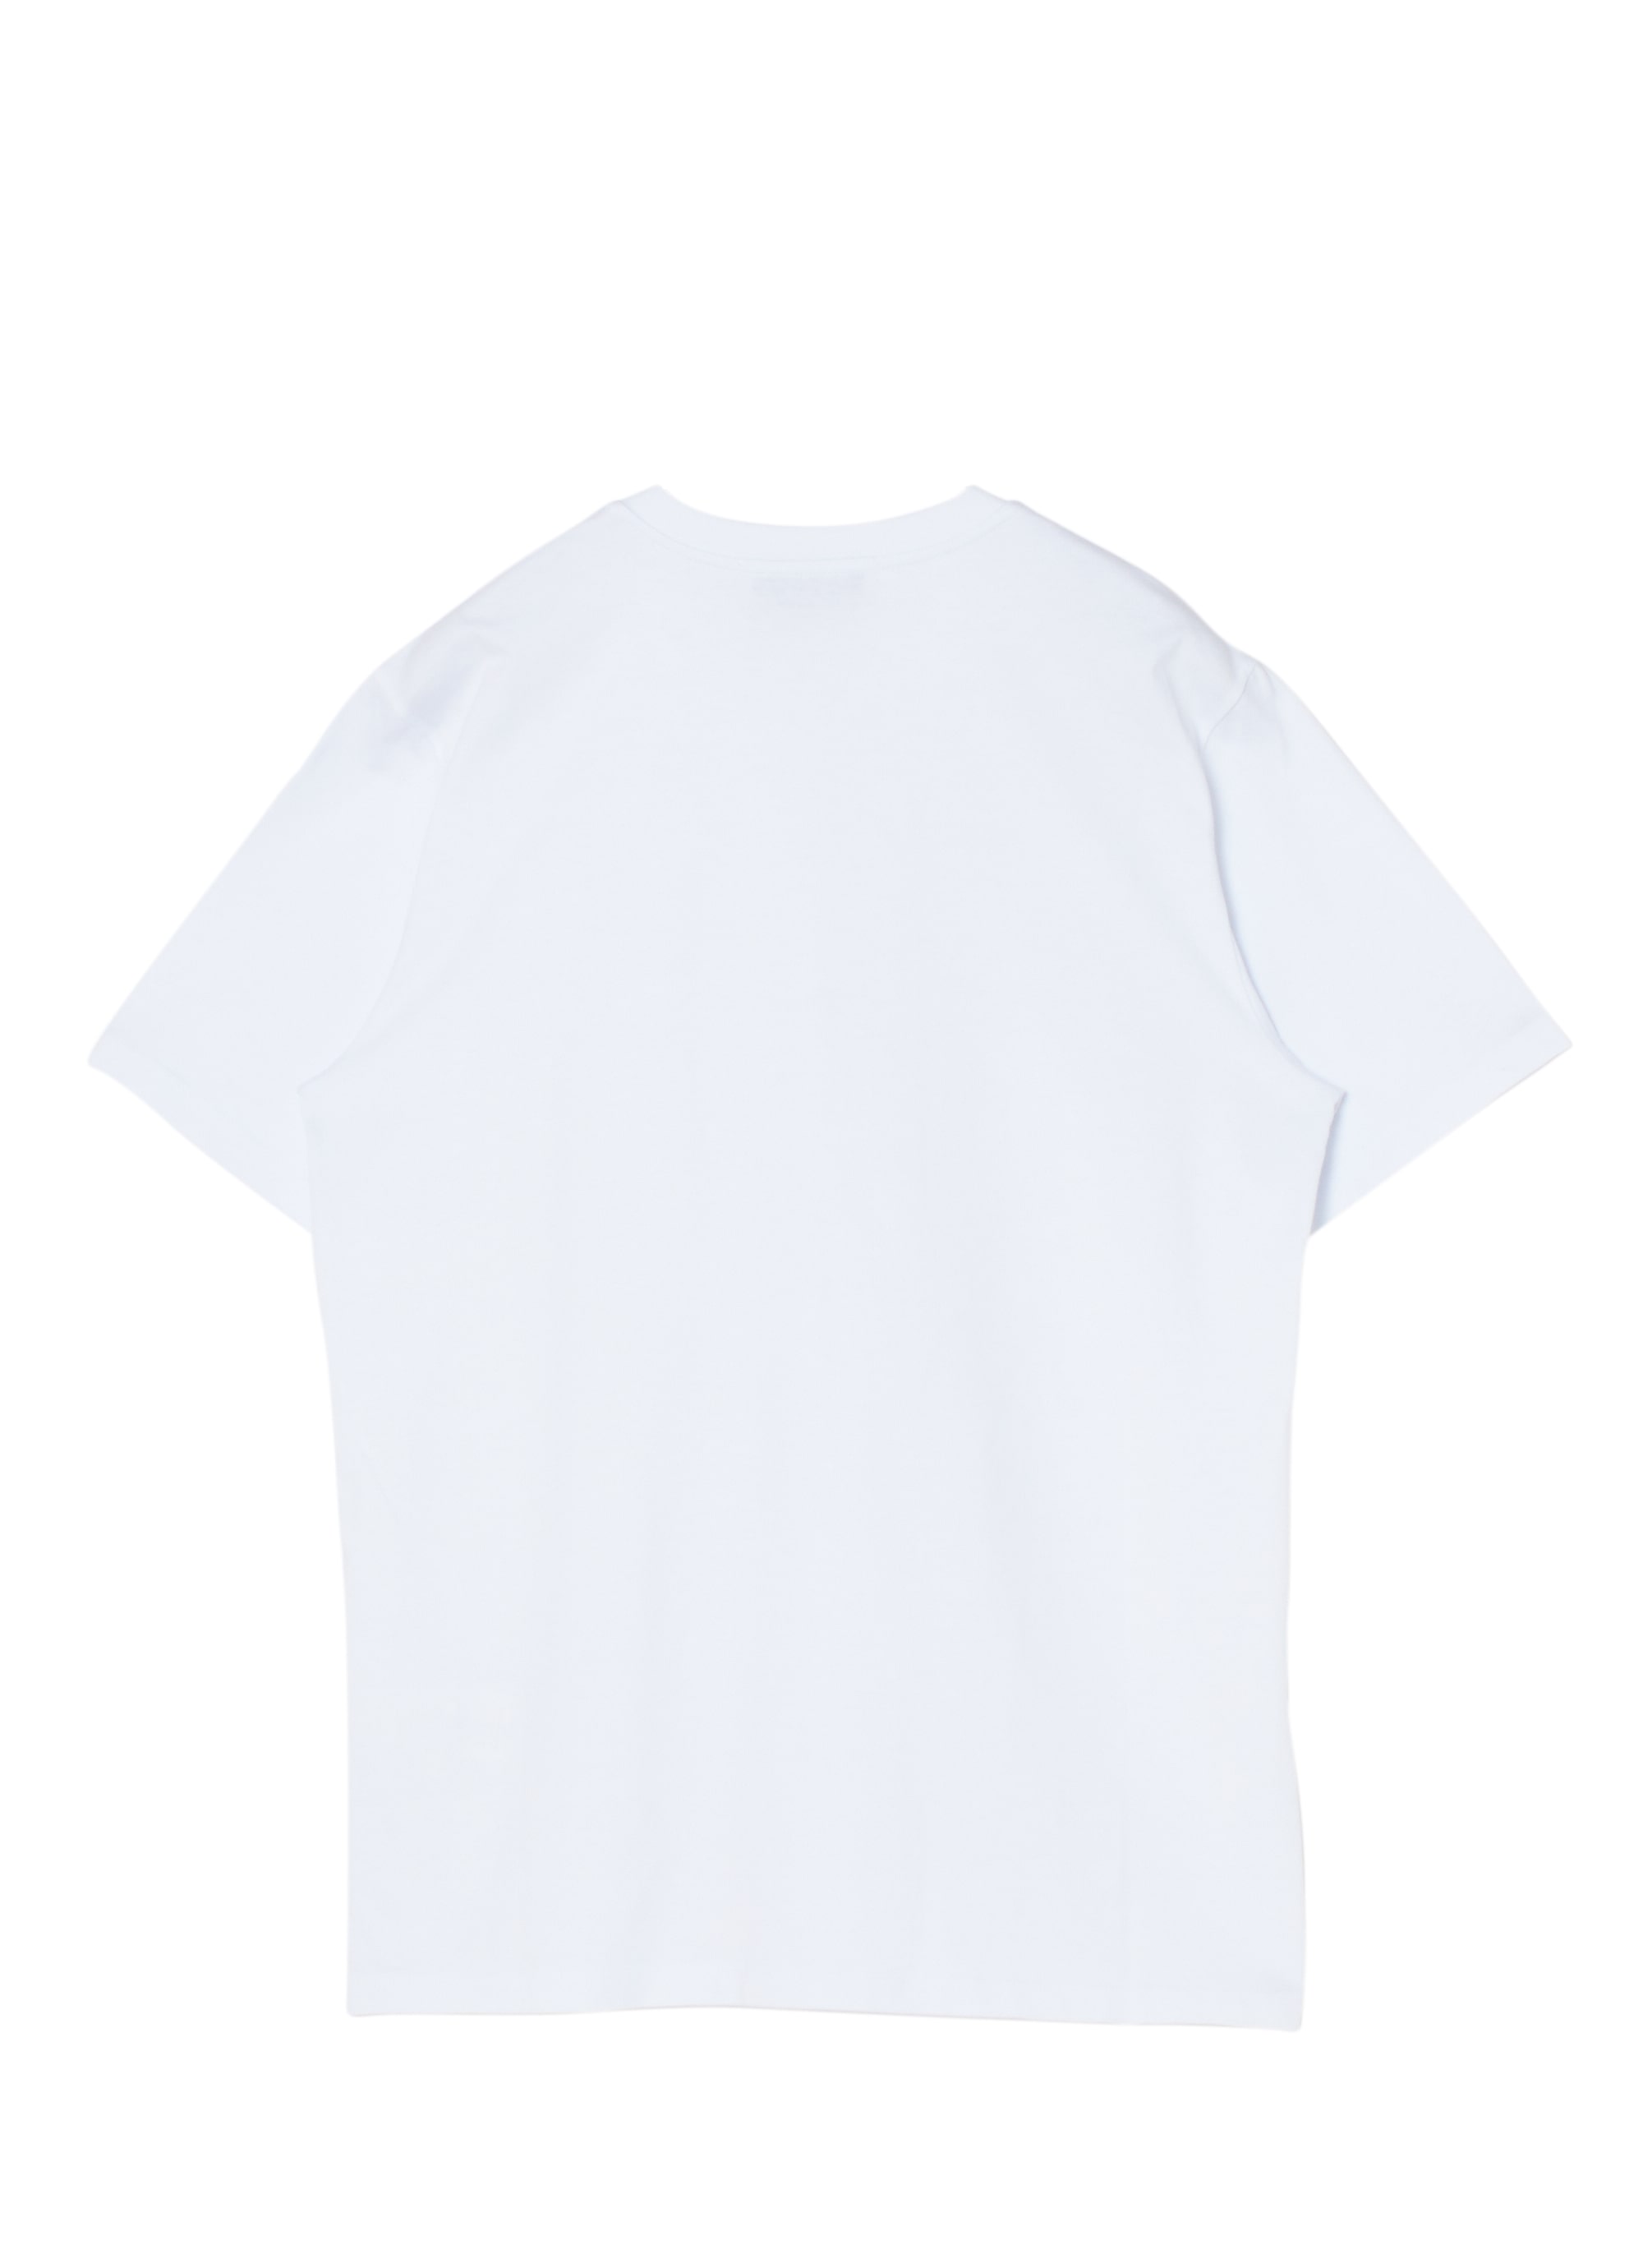 メンズ Tシャツ 詳細画像 ホワイト 2